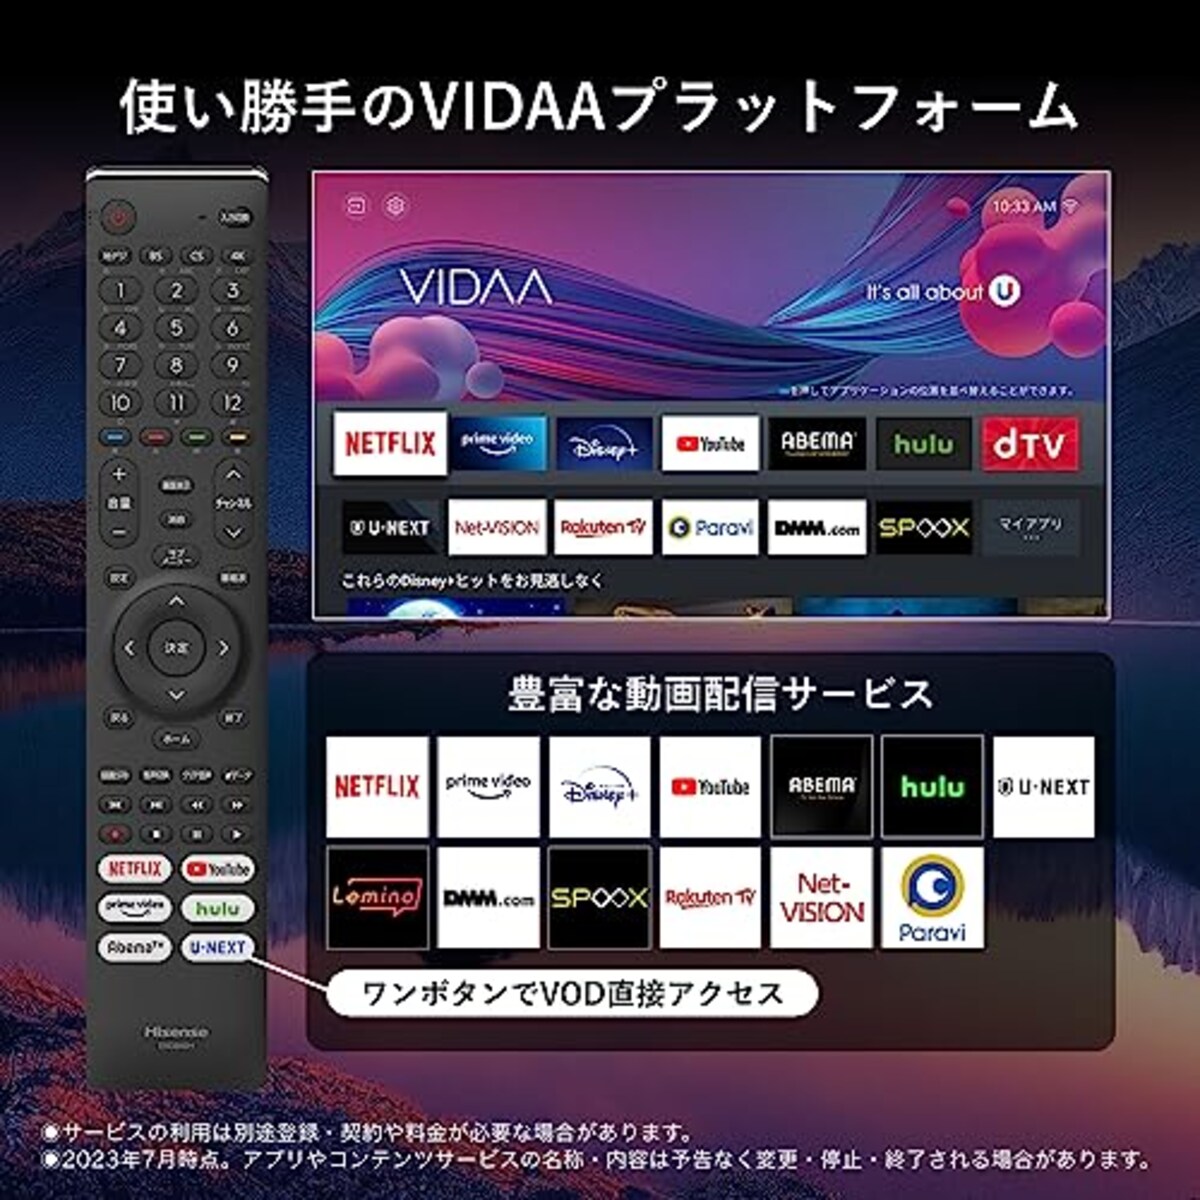  ハイセンス 75V型 4Kチューナー内蔵 液晶 テレビ 75E6G ネット動画対応 ADSパネル 3年保証画像6 